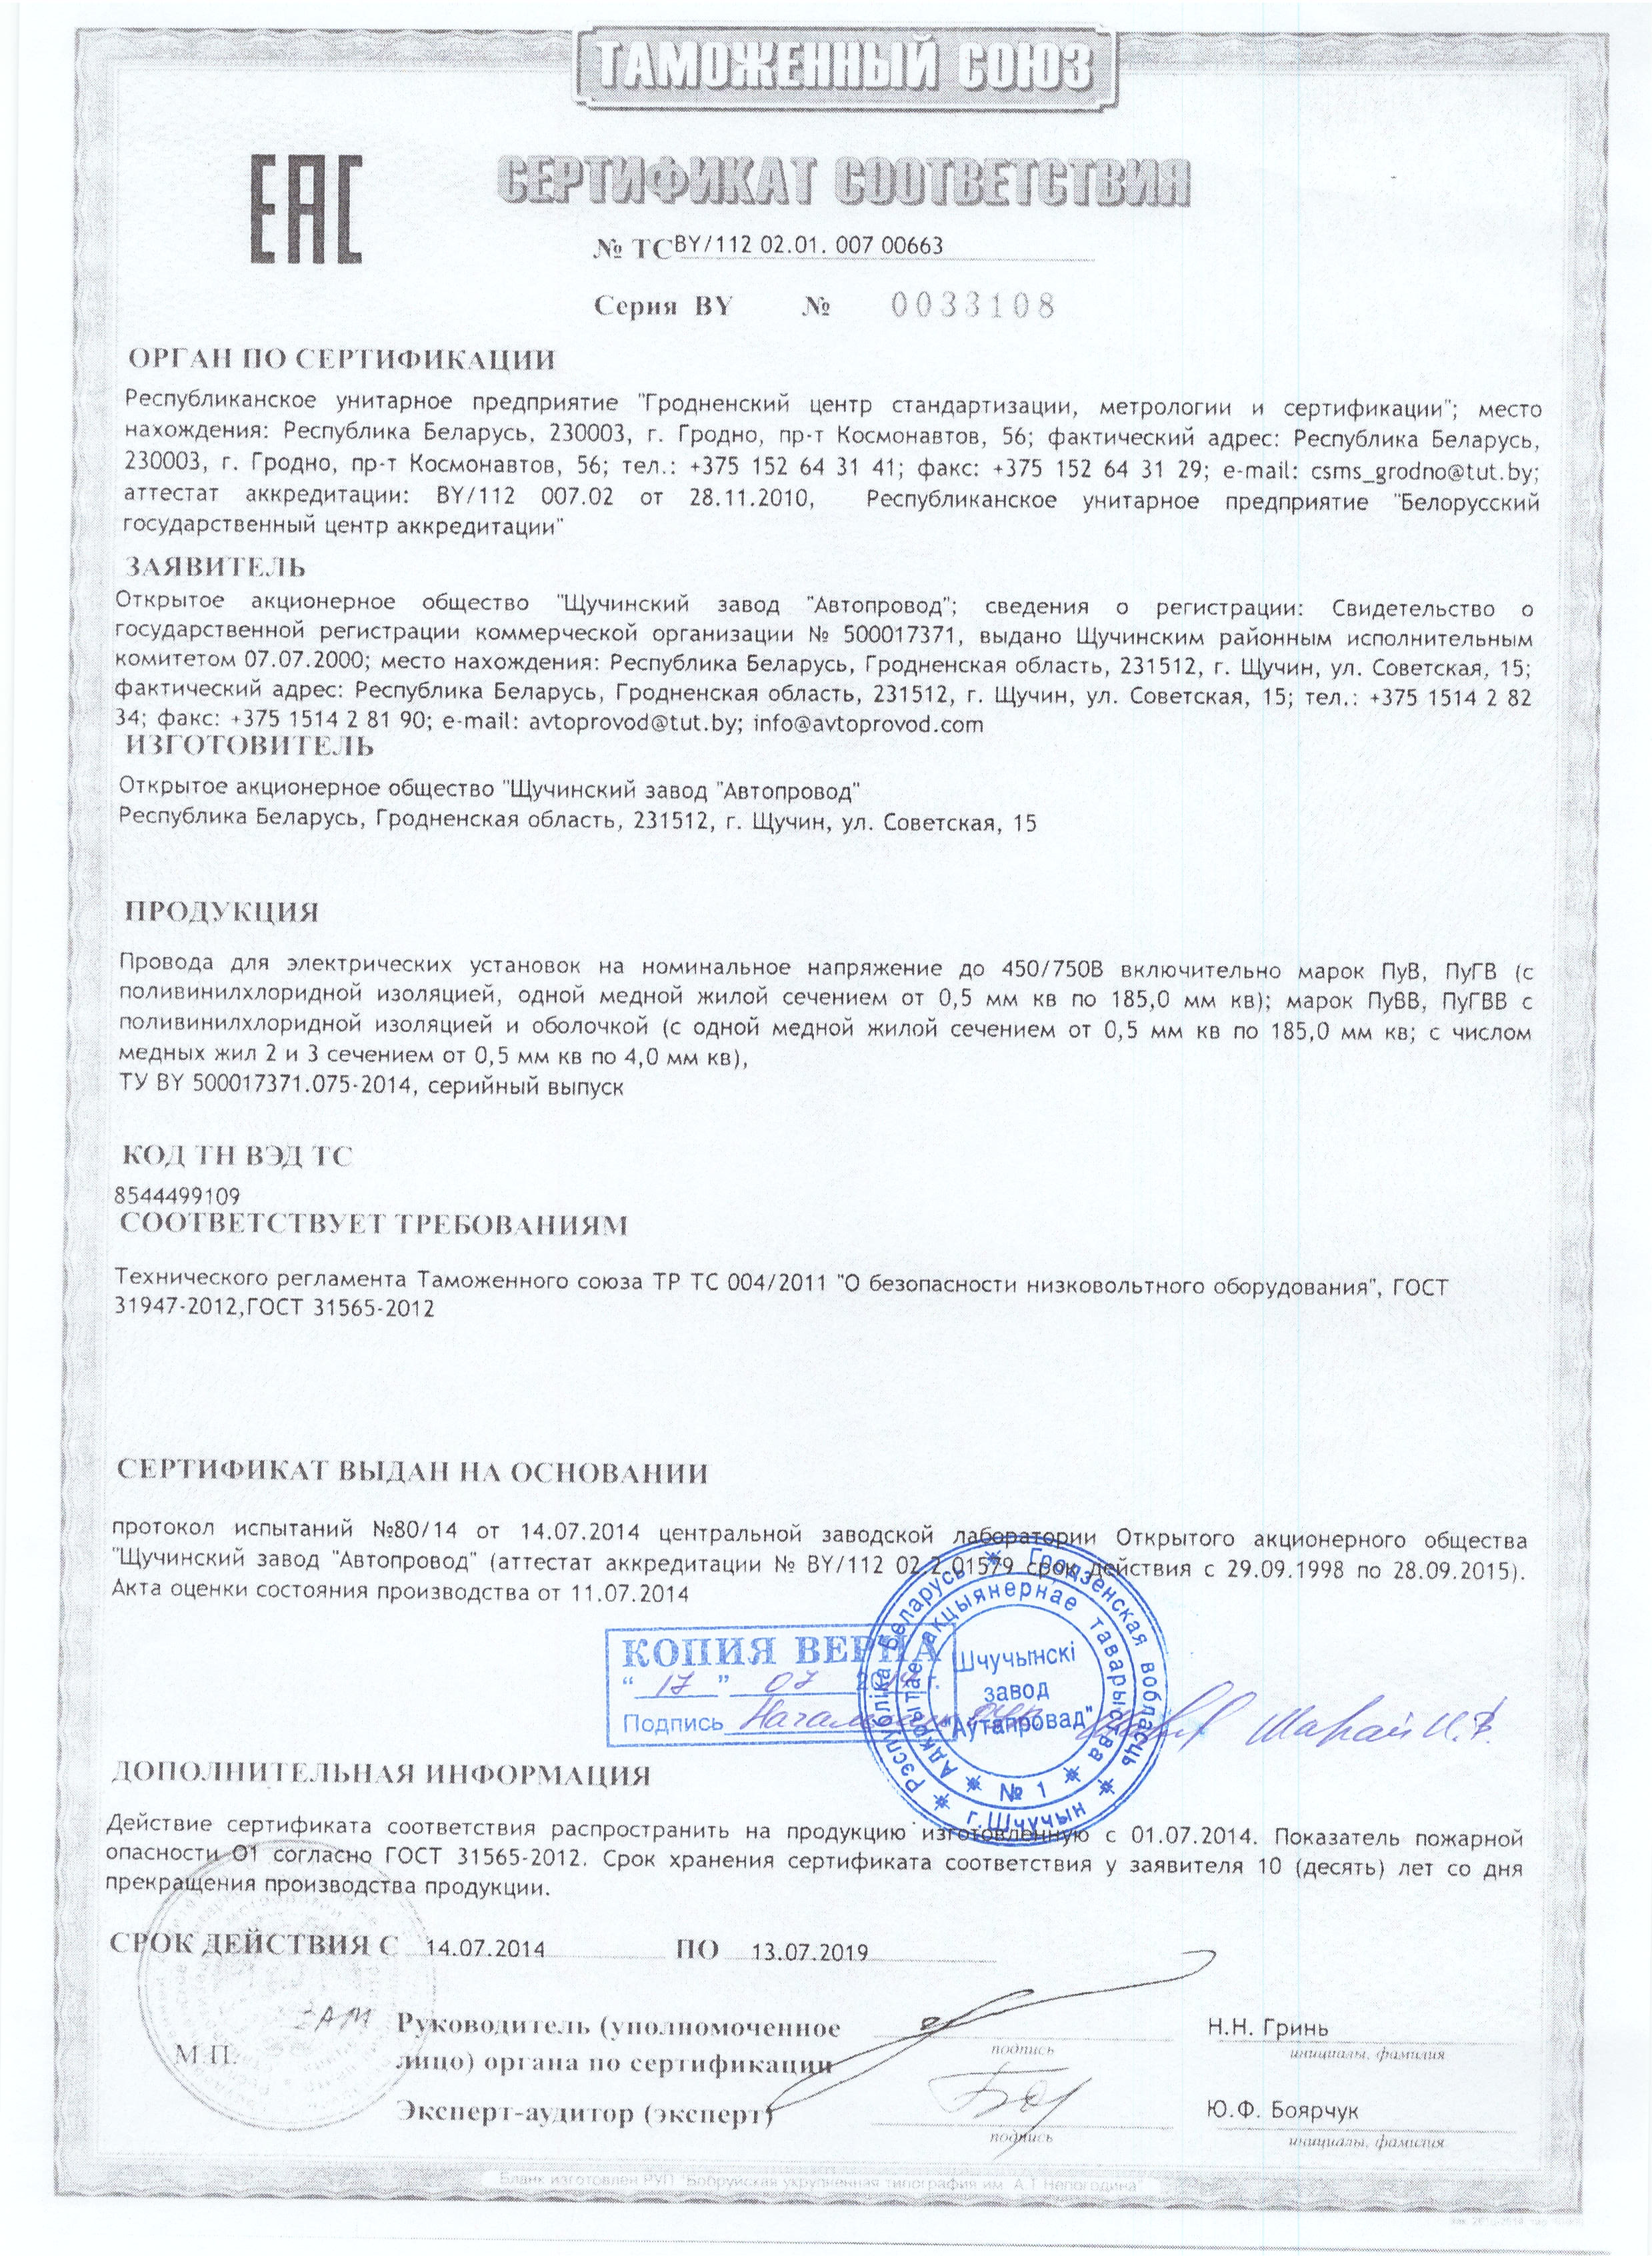 Сертификация НКУ низковольтных комплектных устройств